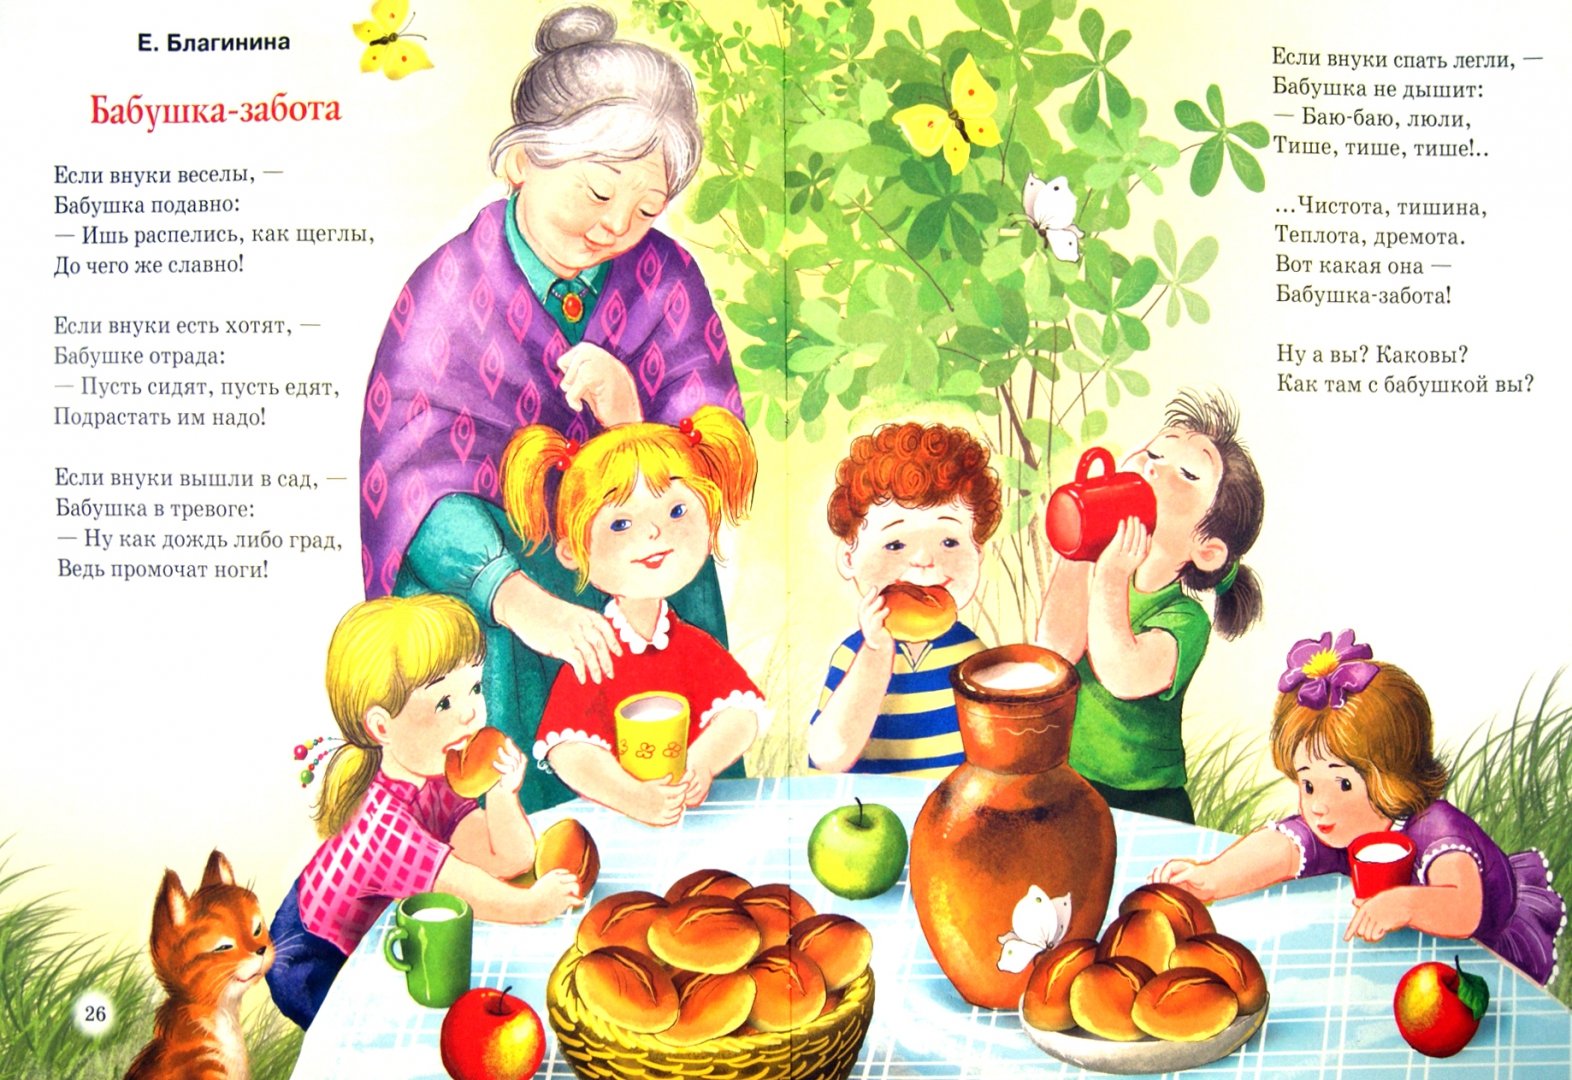 Стихи про бабушку, стихи для бабушки, поздравления бабушке